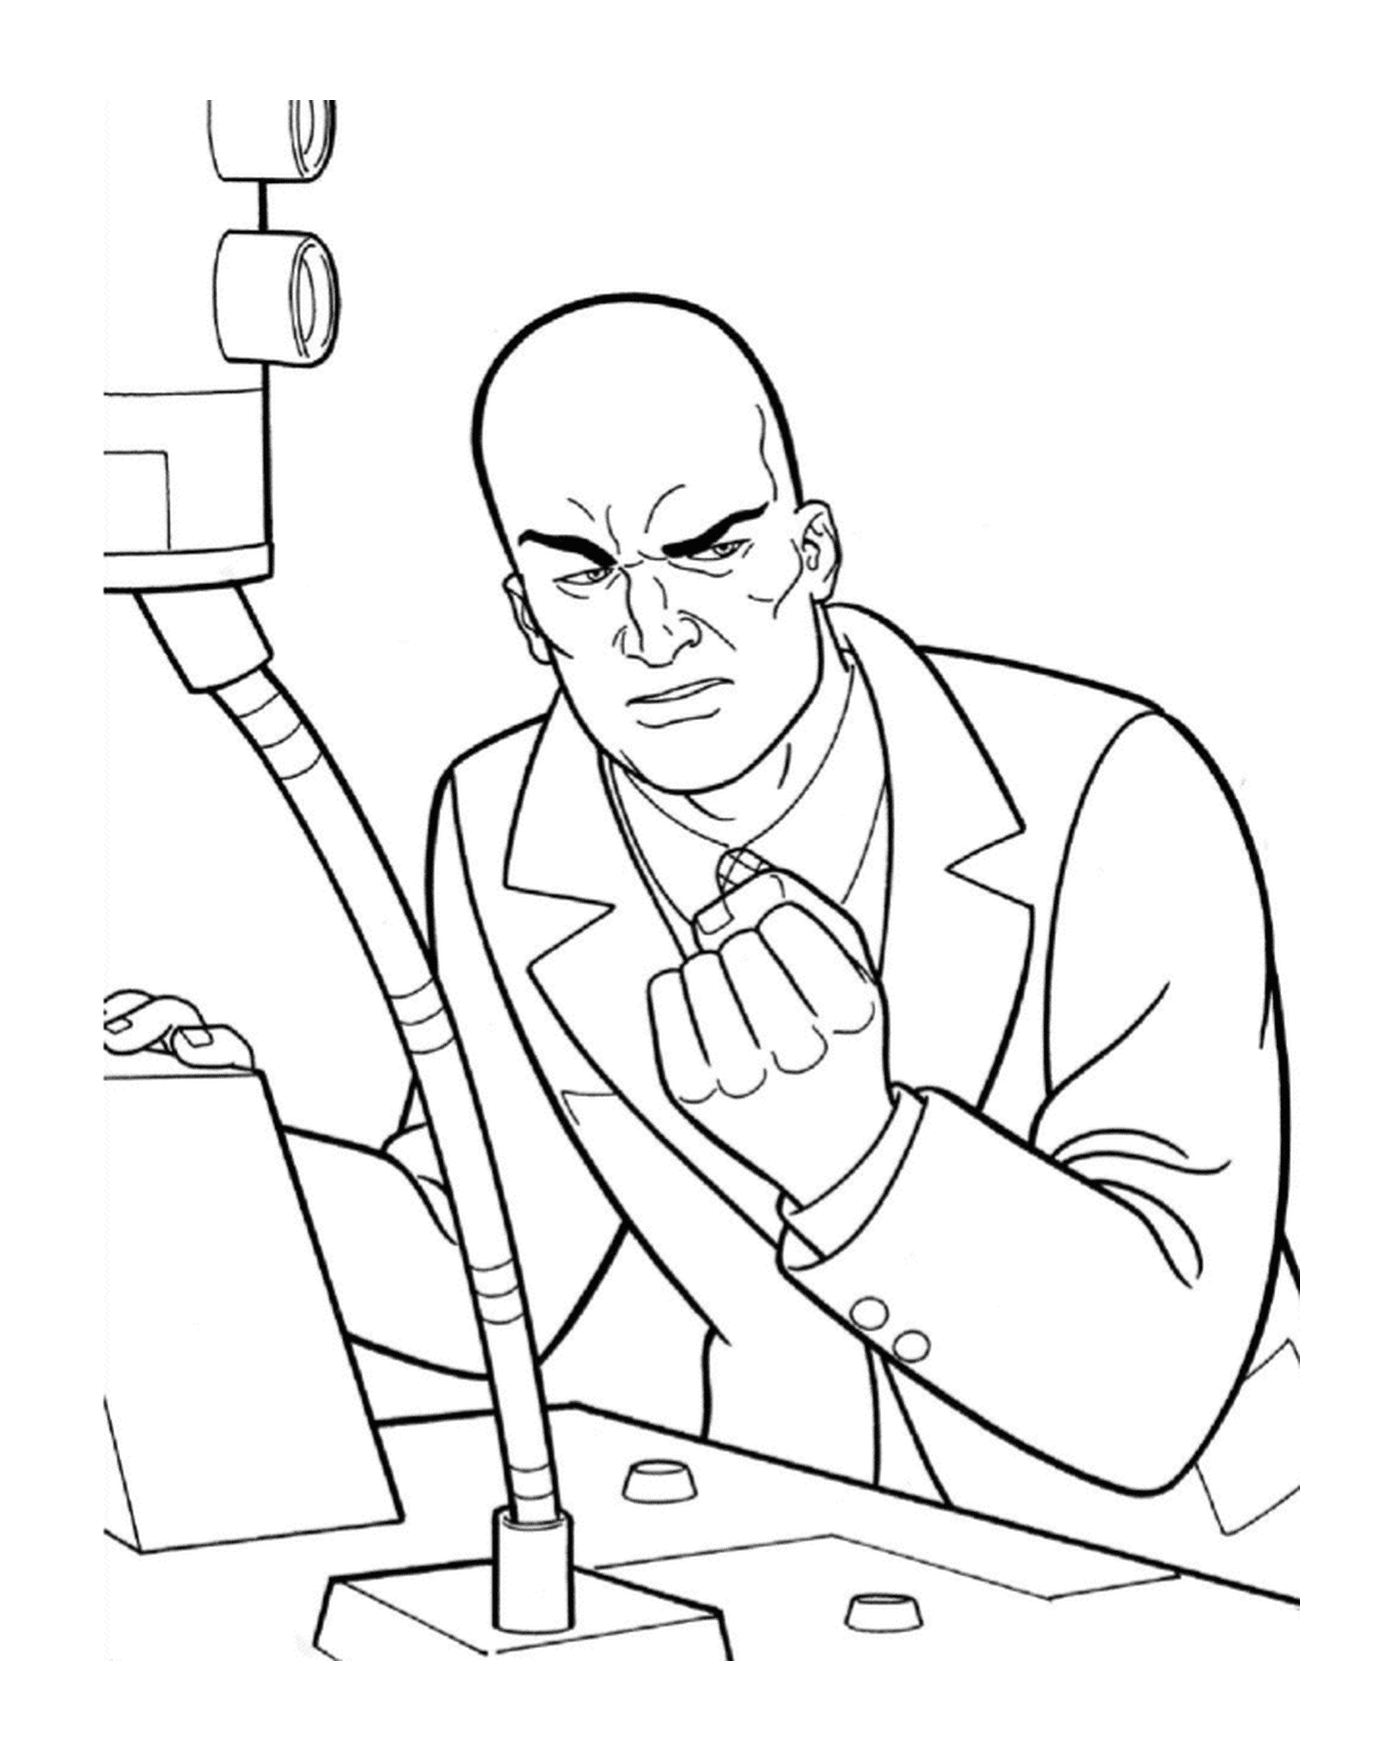  Lex Luthor, der Geschäftsmann 